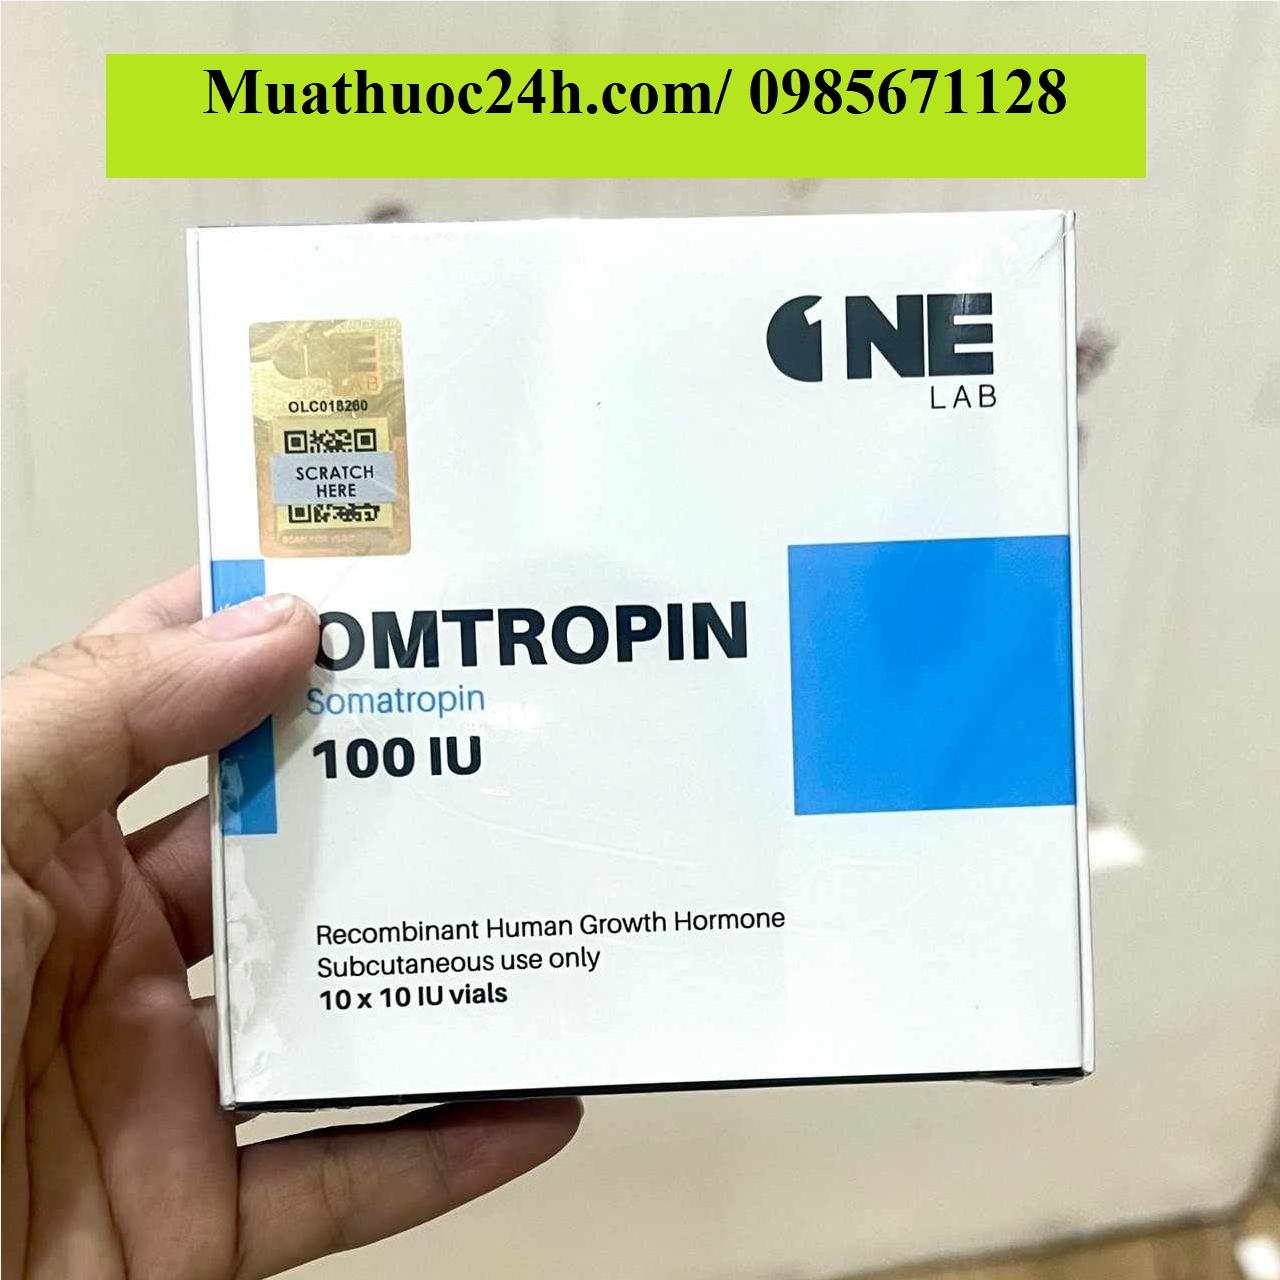 Thuốc Omtropin Somatropin 100IU giá bao nhiêu mua ở đâu?